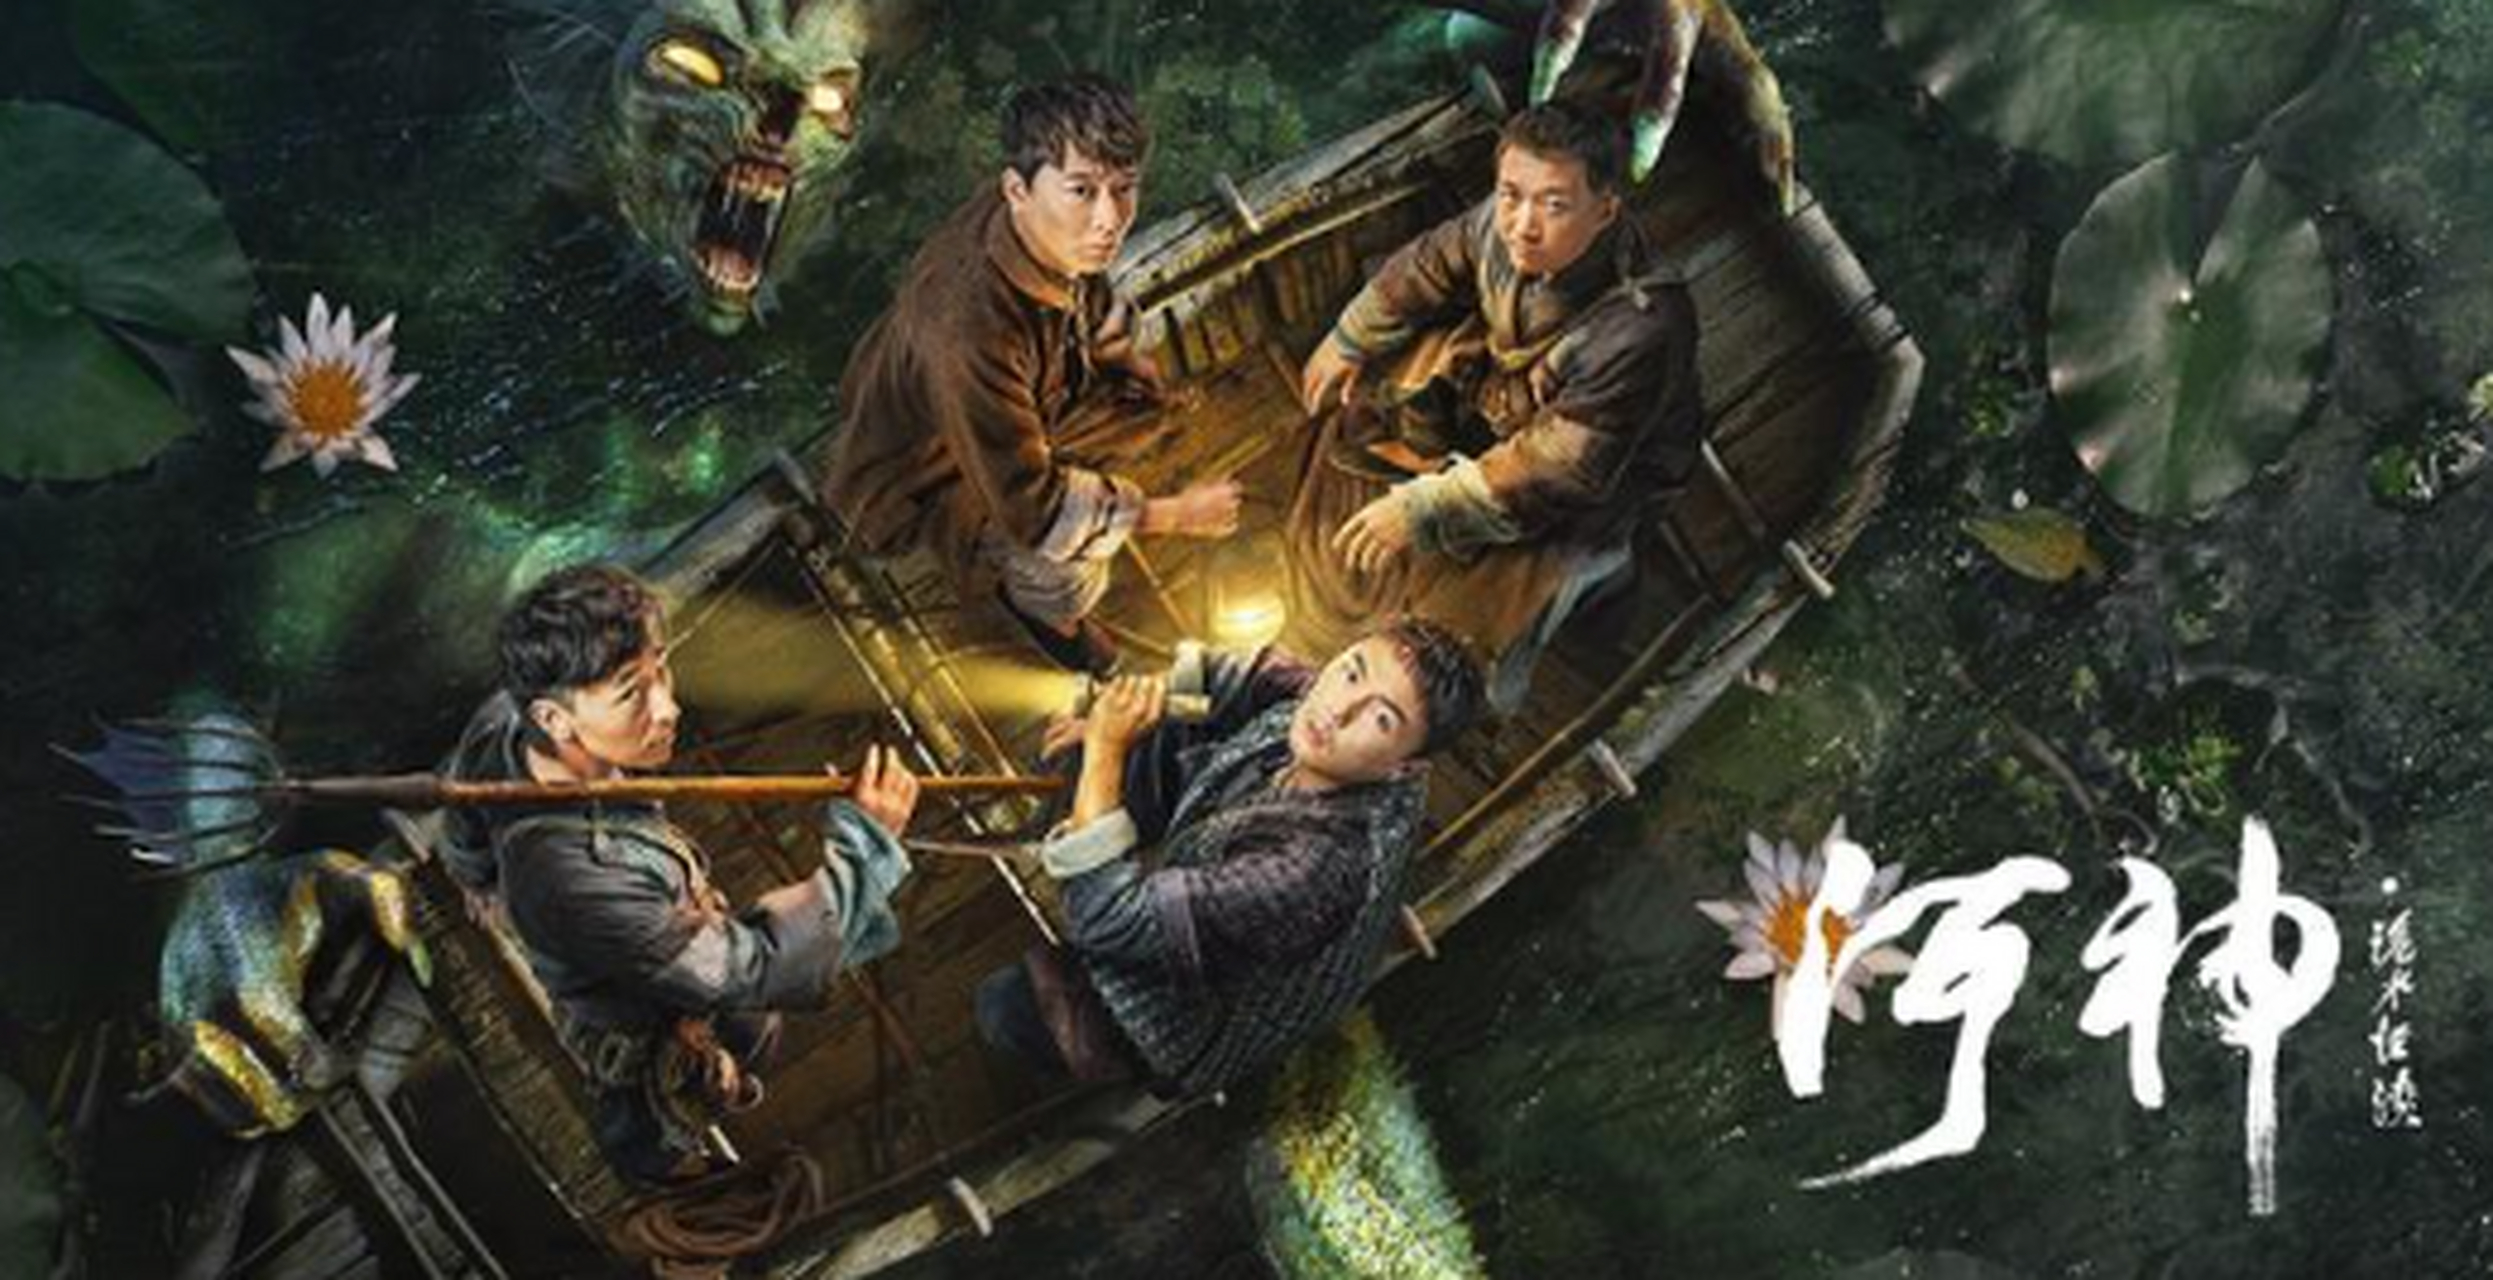 《河神·诡水怪谈》已经在网络视频平台上映播出了,该片由刘轩狄执导